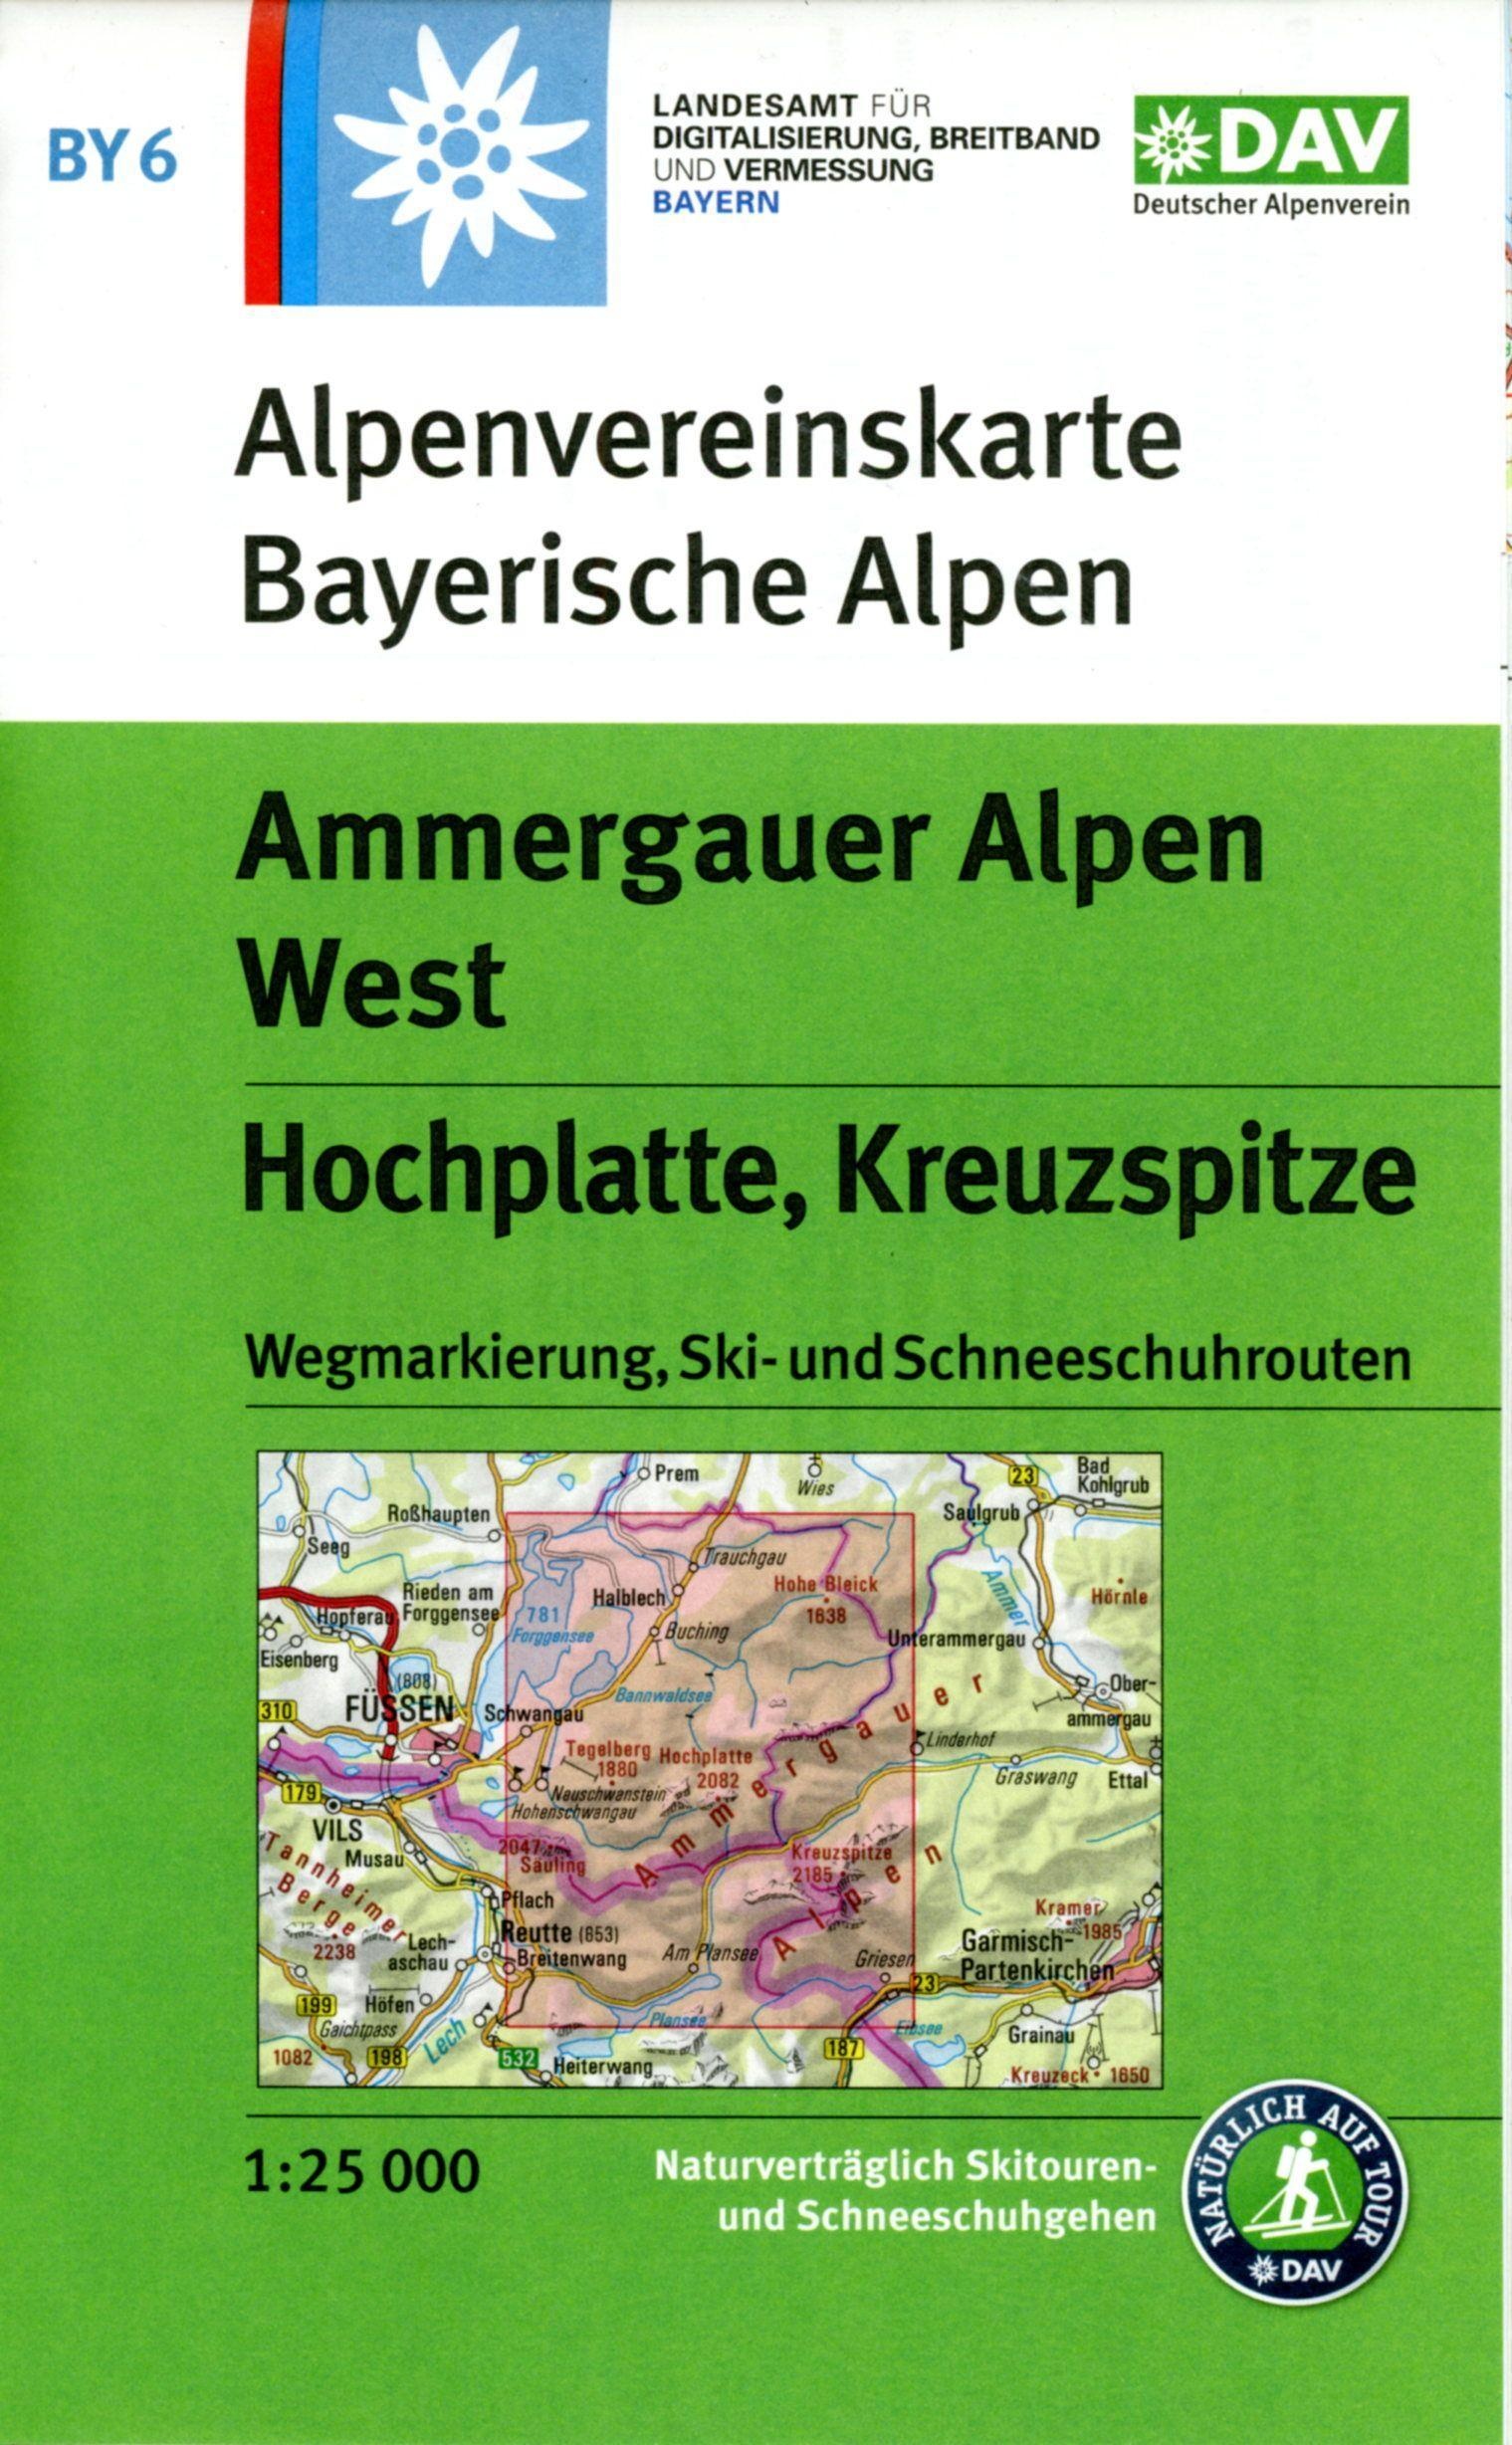 Ammergauer Alpen West  Hochplatte  Kreuzspitze  Karte (im Sinne von Landkarte)